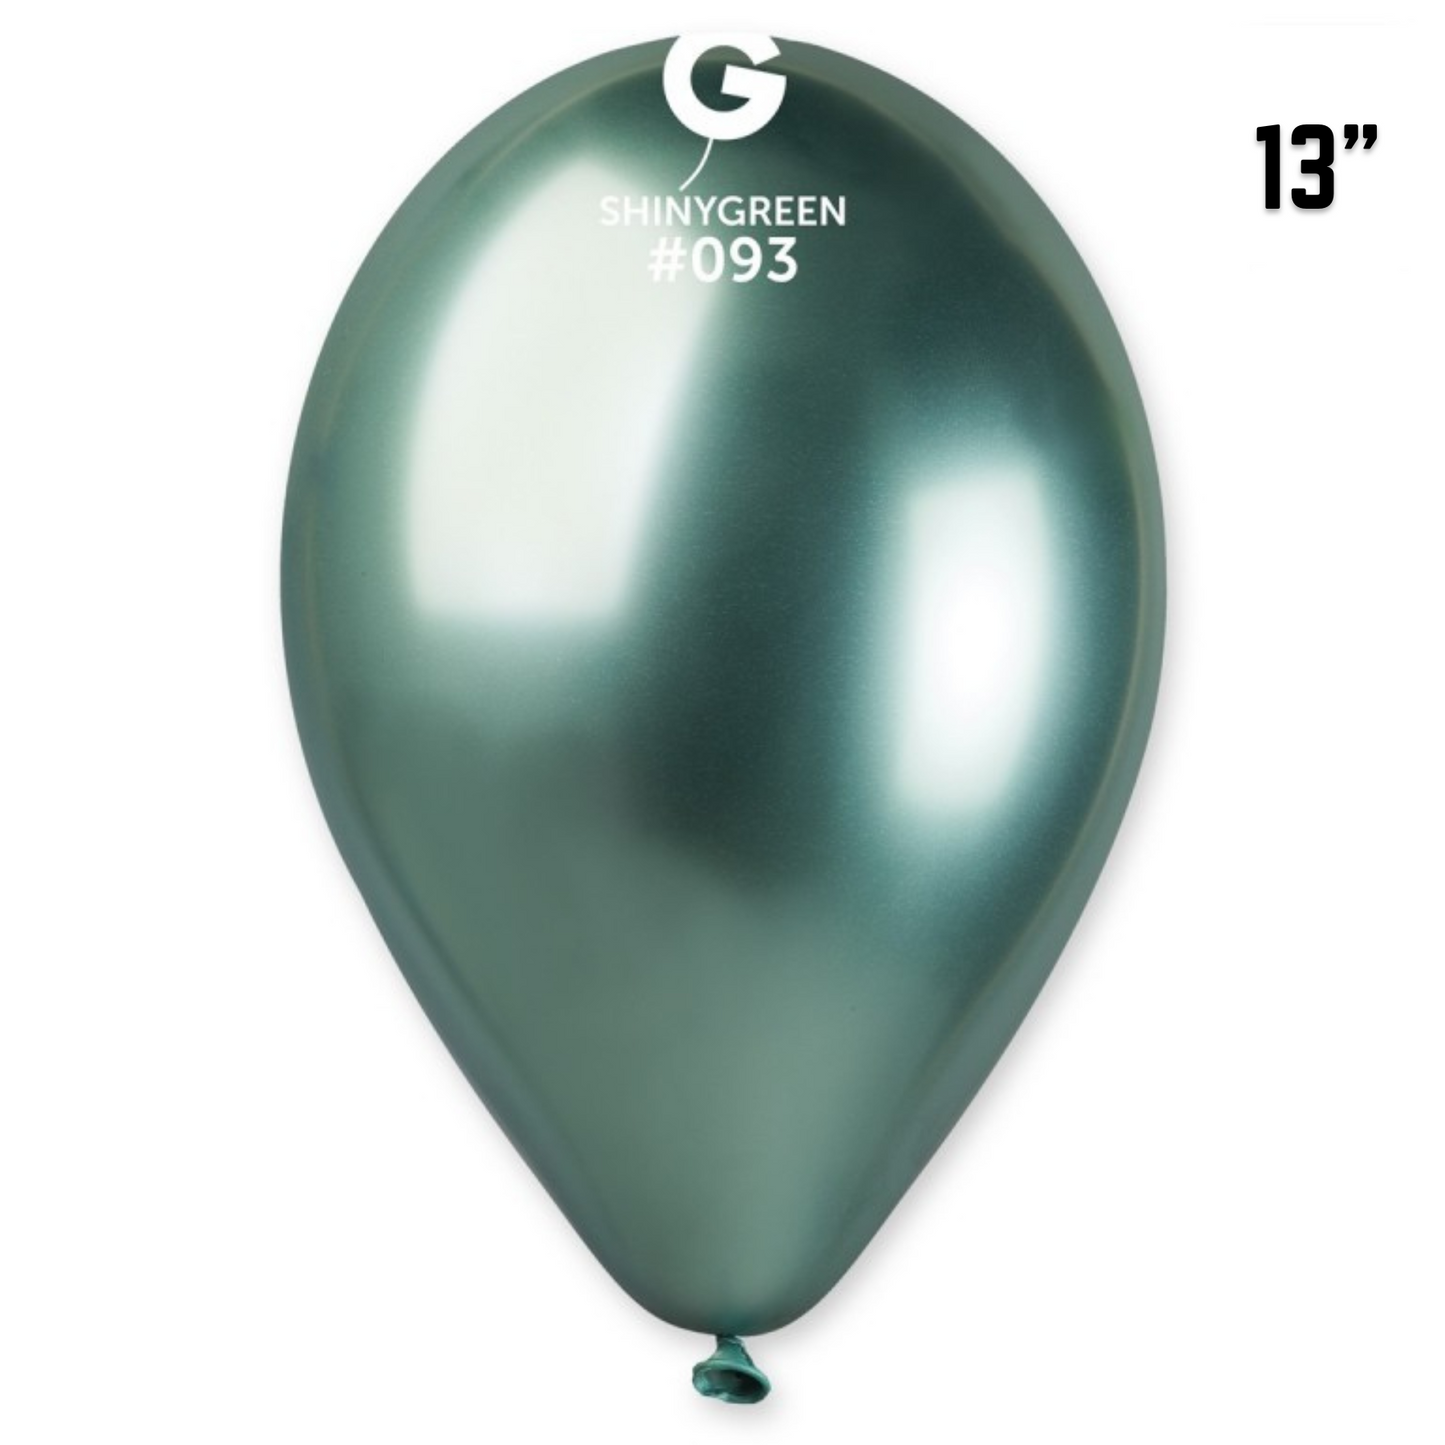 Shiny Green Balloons